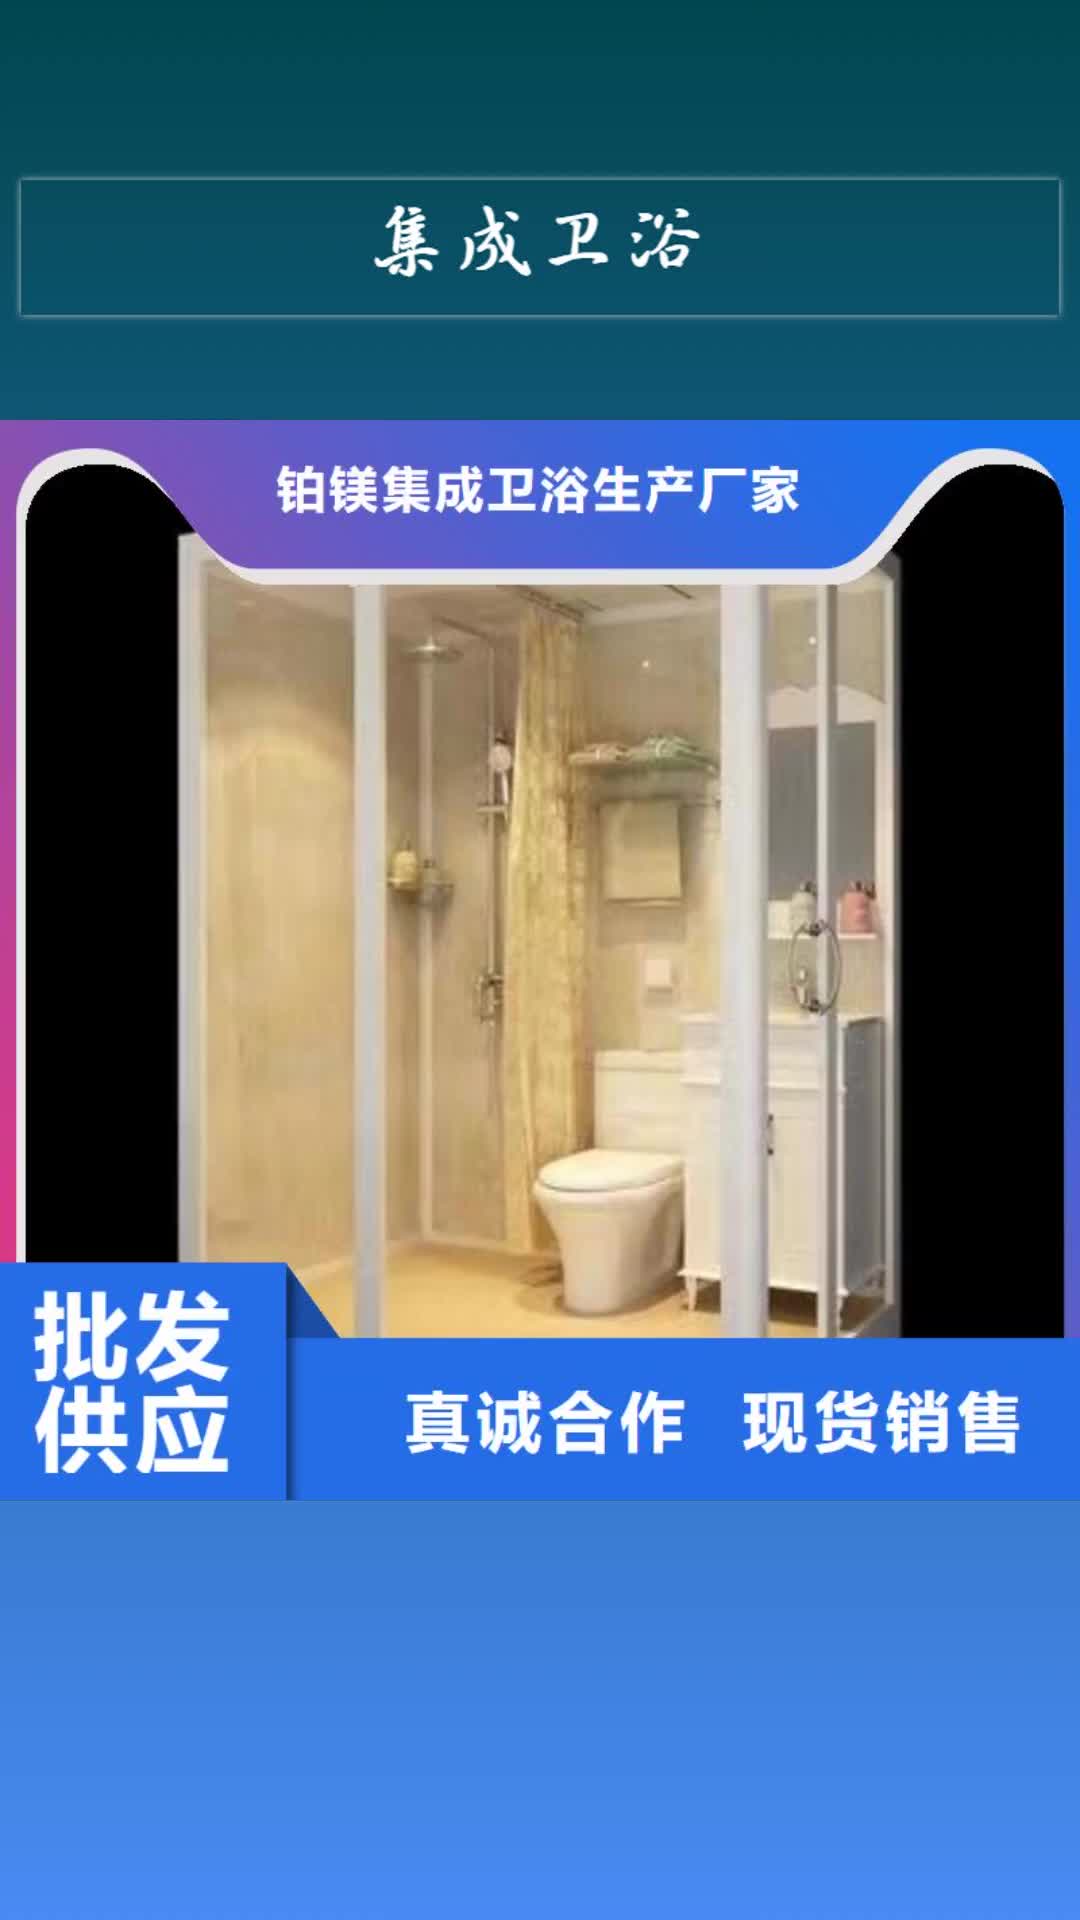 忻州 集成卫浴 【金属雕花厕  所】欢迎来电咨询